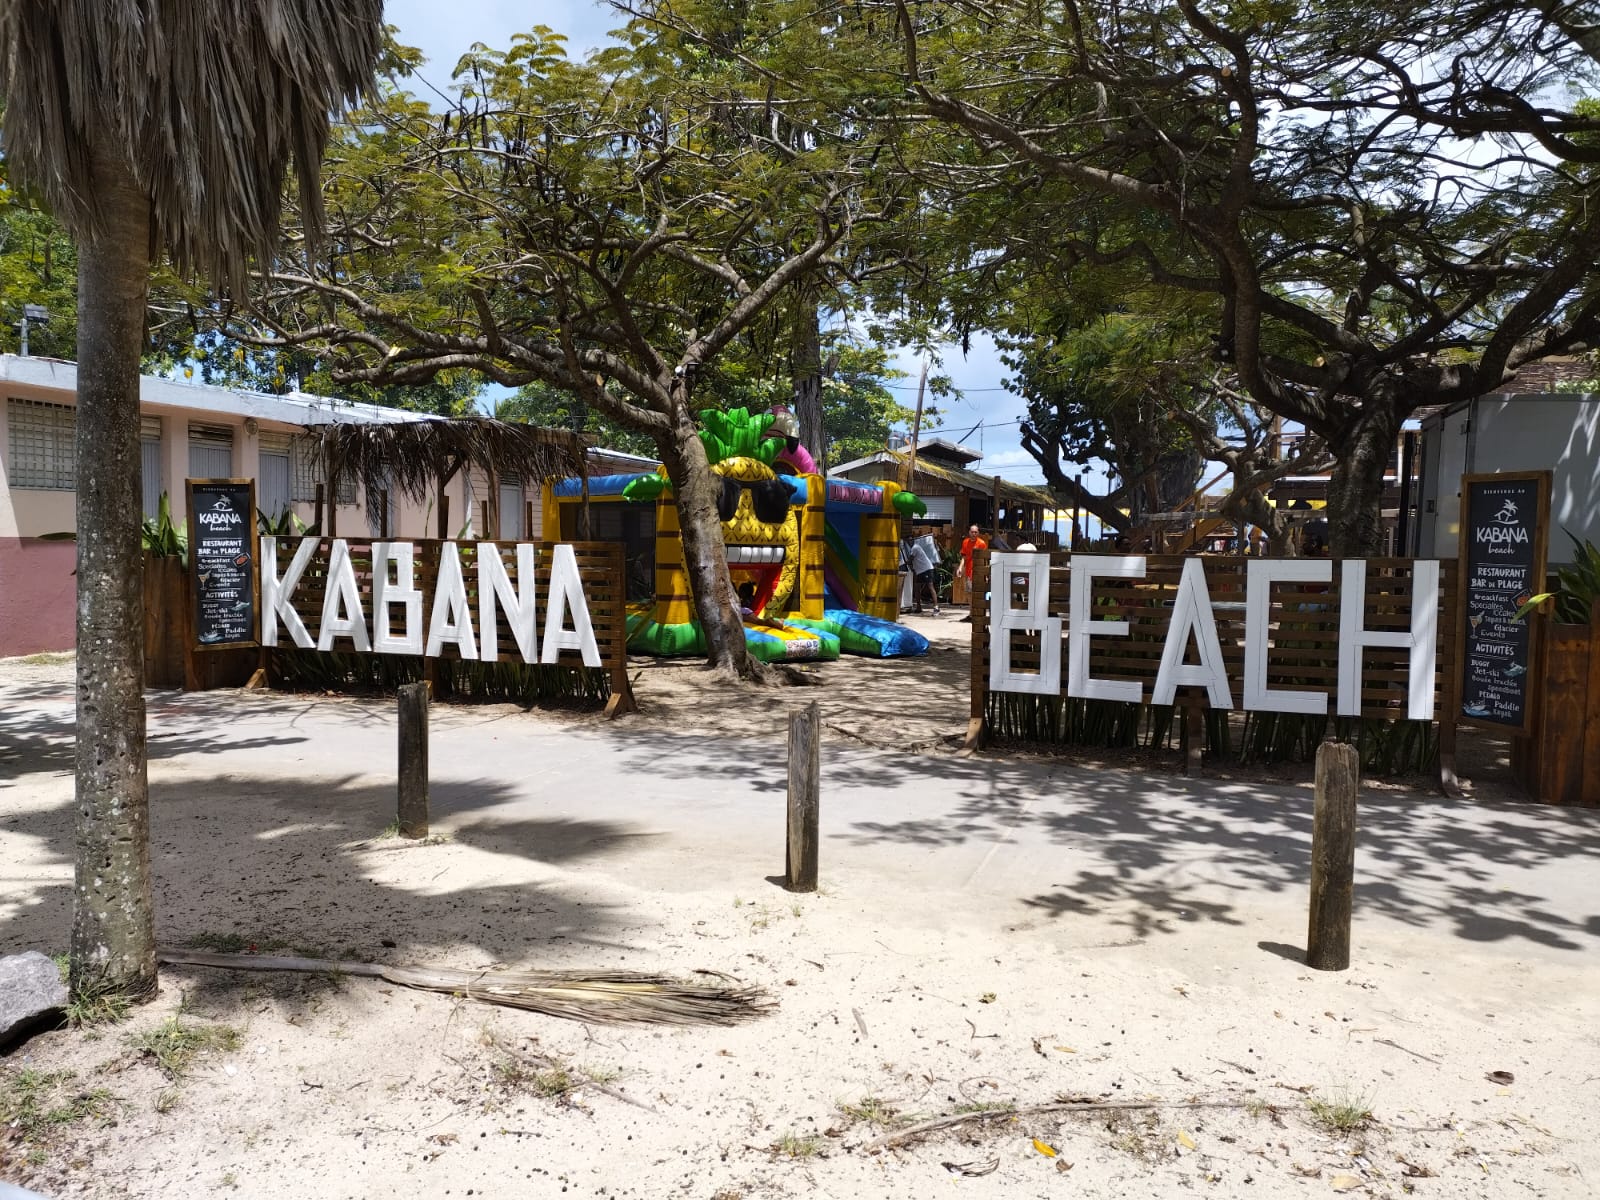     Le Kabana Beach reprend du service

